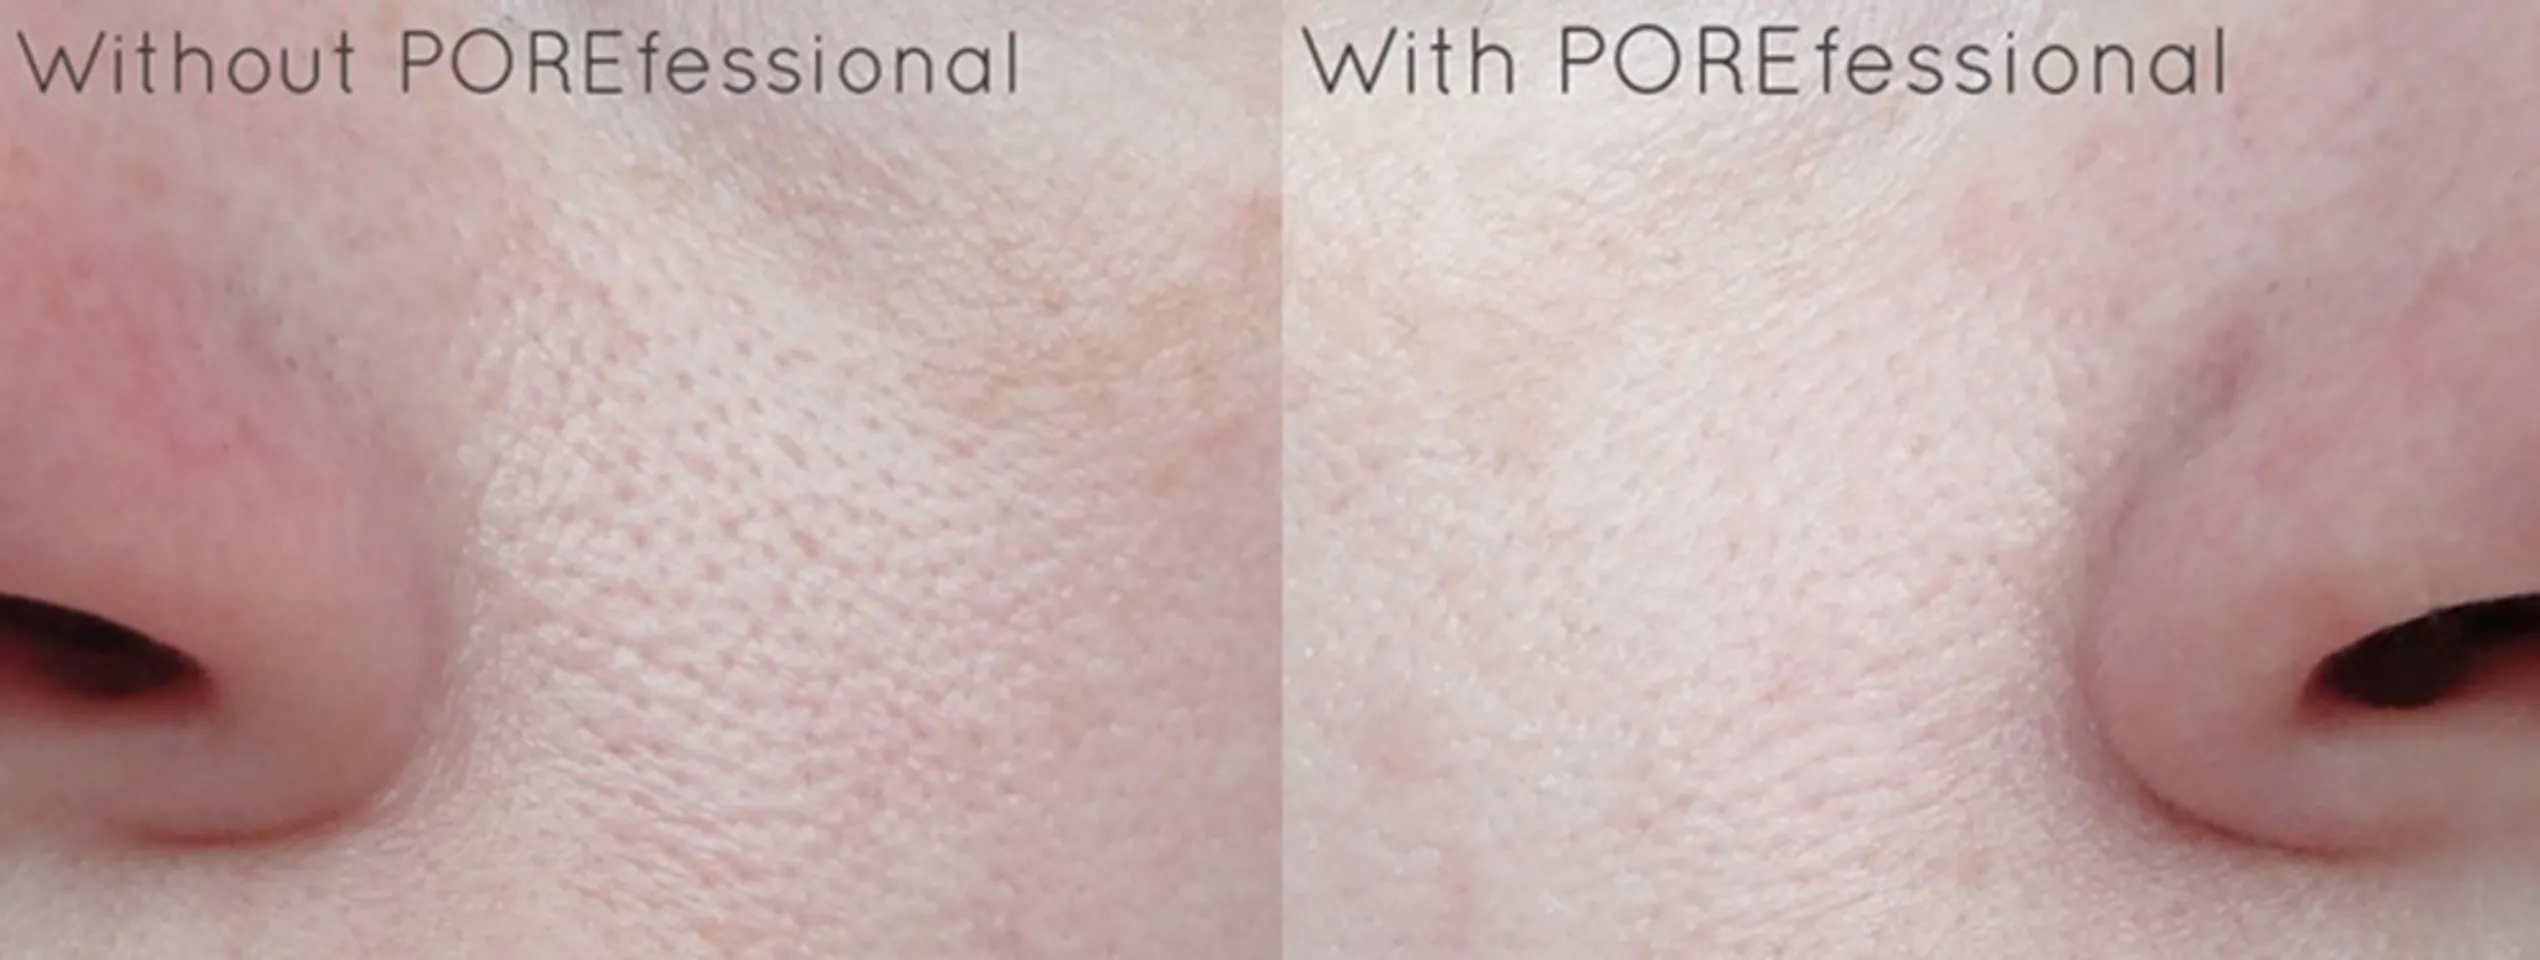 Kem lót Benefit The Pore fessional giúp thu nhỏ các lỗ chân lông lớn, làm phẳng mịn những nếp nhăn, khiến làn da của bạn trở nên mịn màng